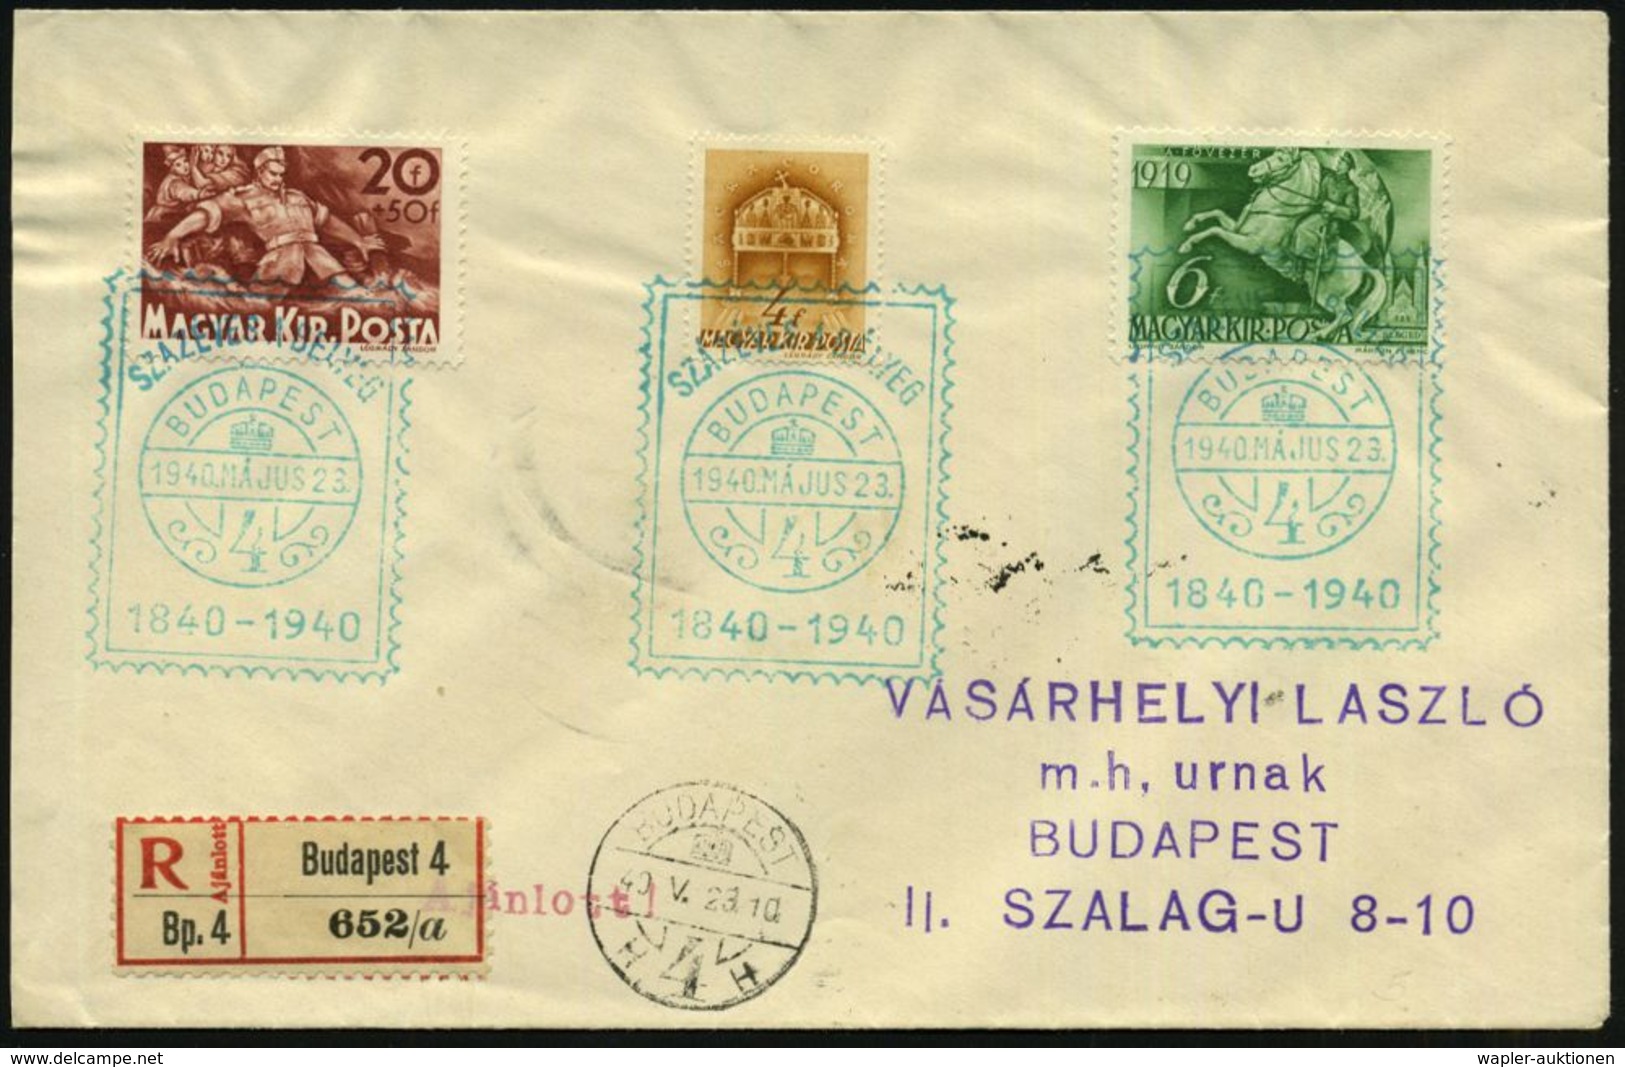 UNGARN 1940 (23.5.) Grüner SSt.: BUDAPEST/4/SZAZEVES A BELYEG/1840 - 1940 = 100 Jahre Britische Briefmarke (Markenimitat - Briefmarkenausstellungen